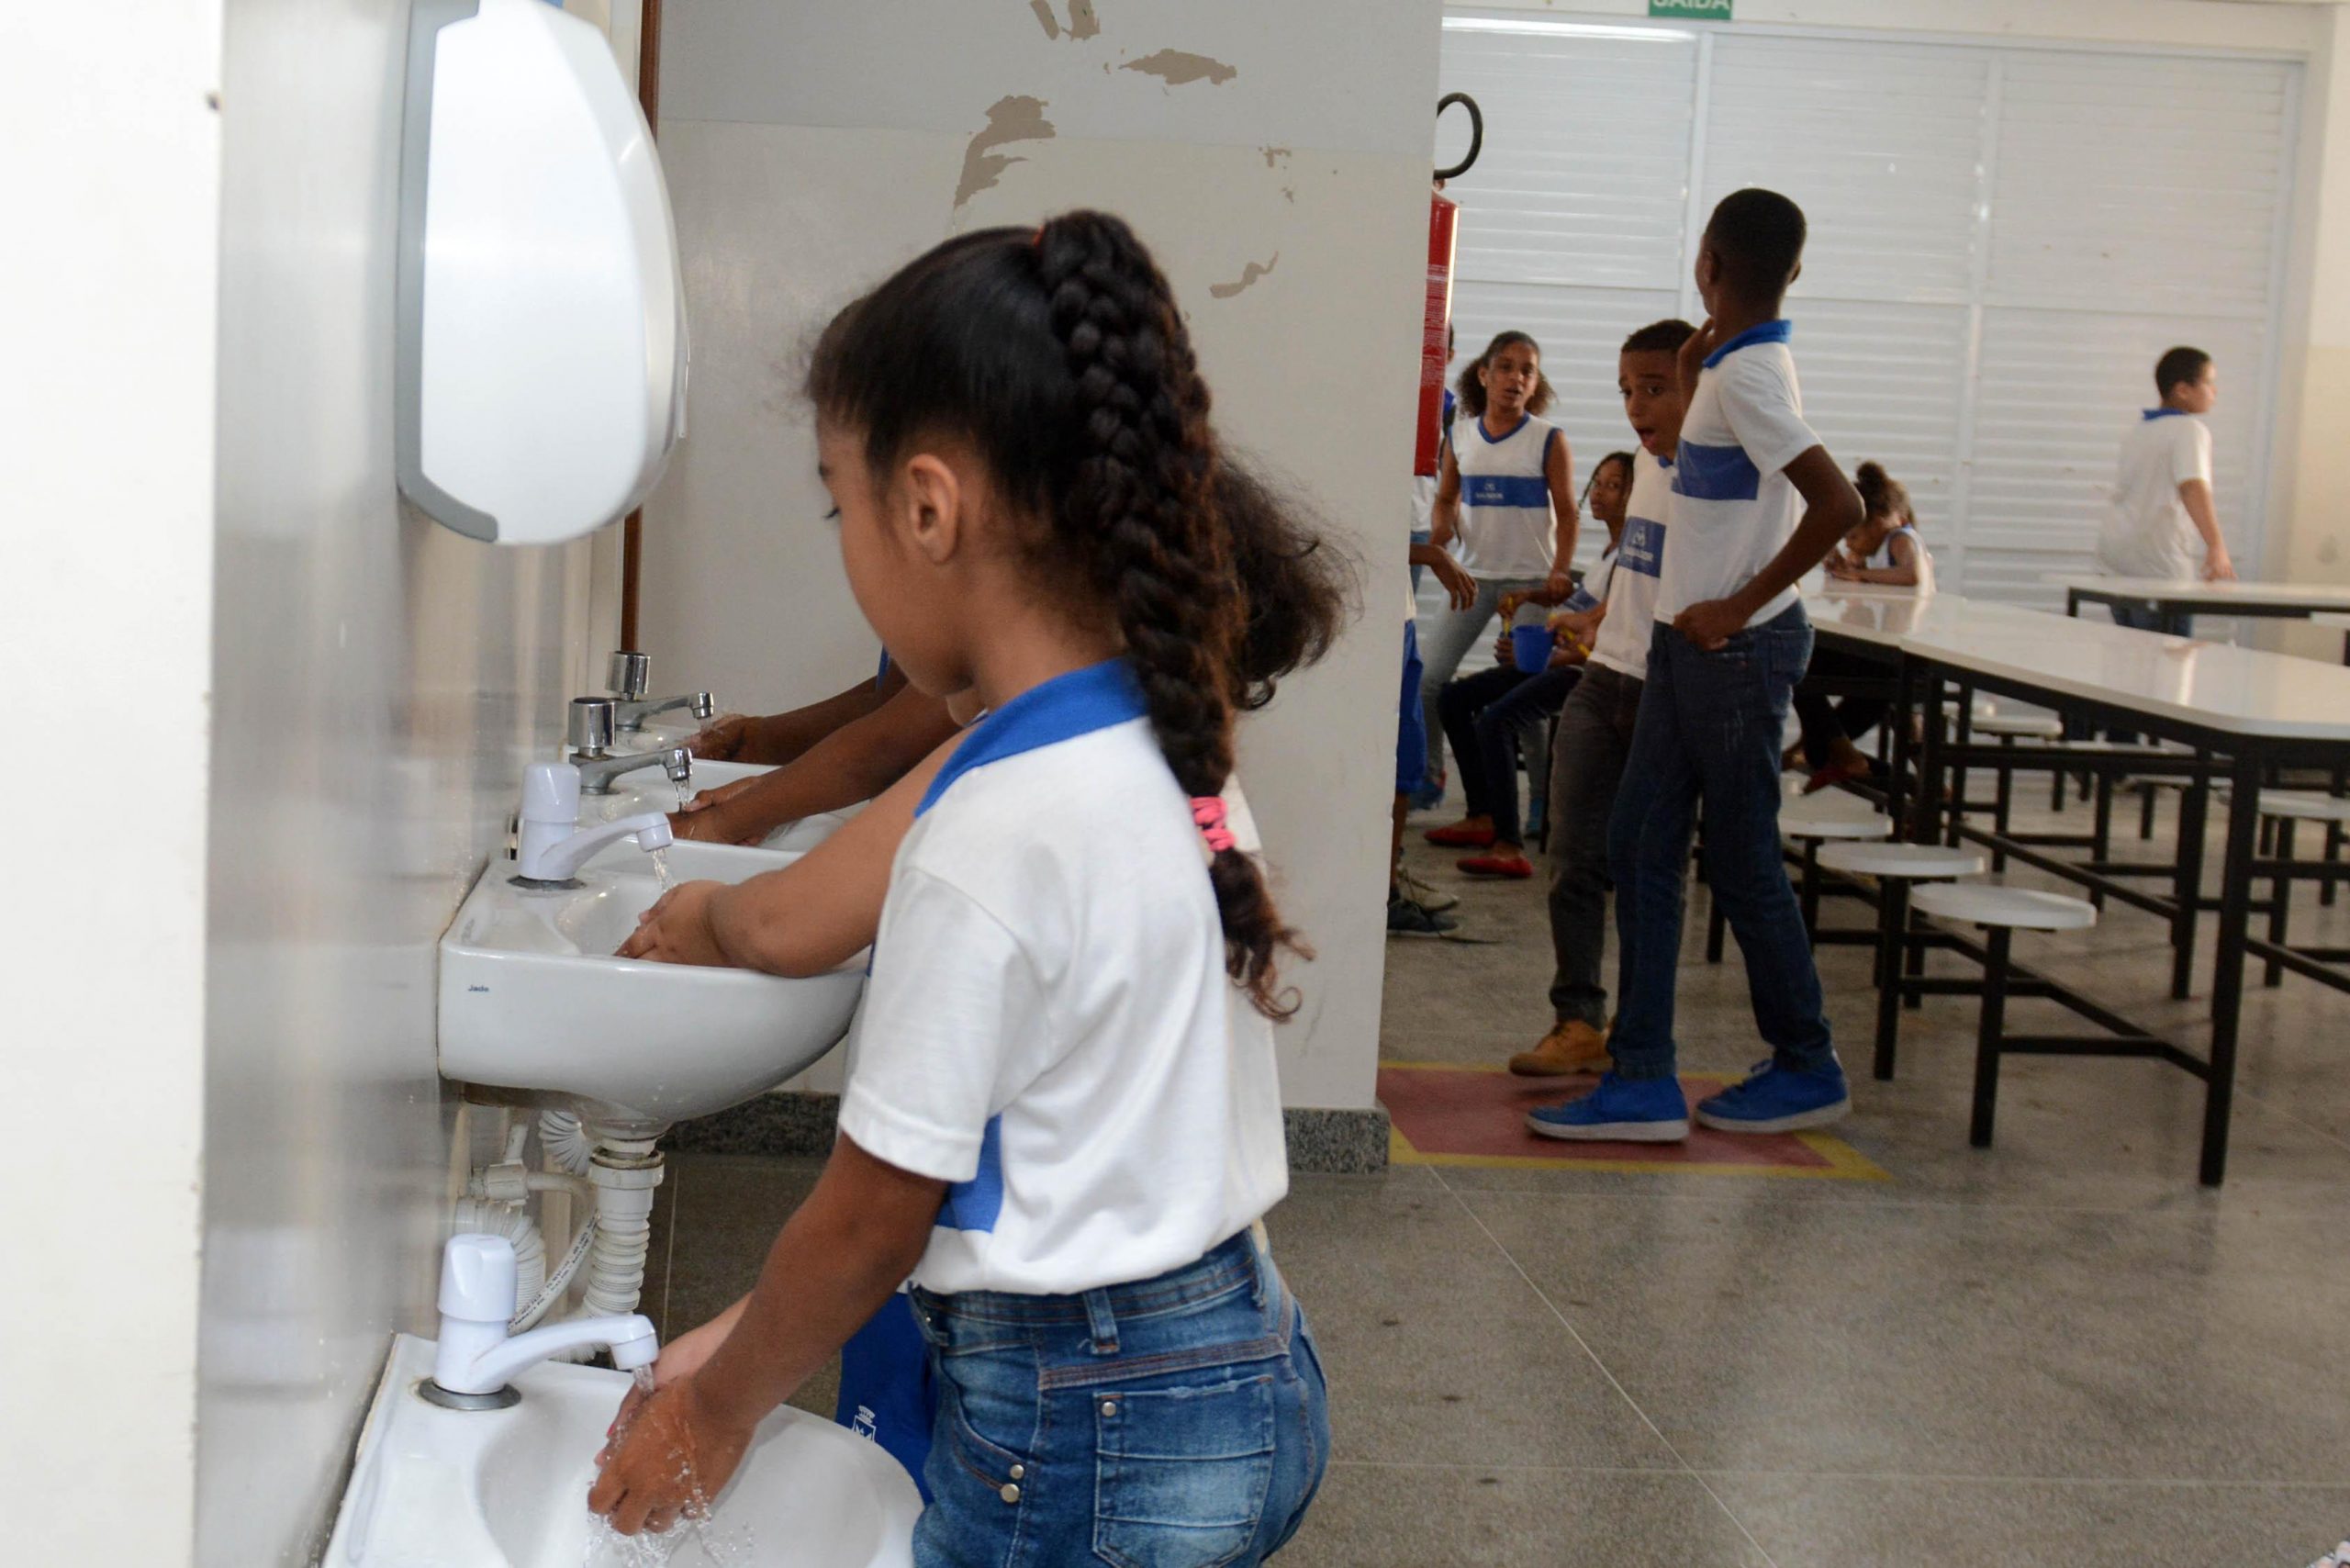 Salvador avança no Índice de Desenvolvimento da Educação Básica (Ideb)